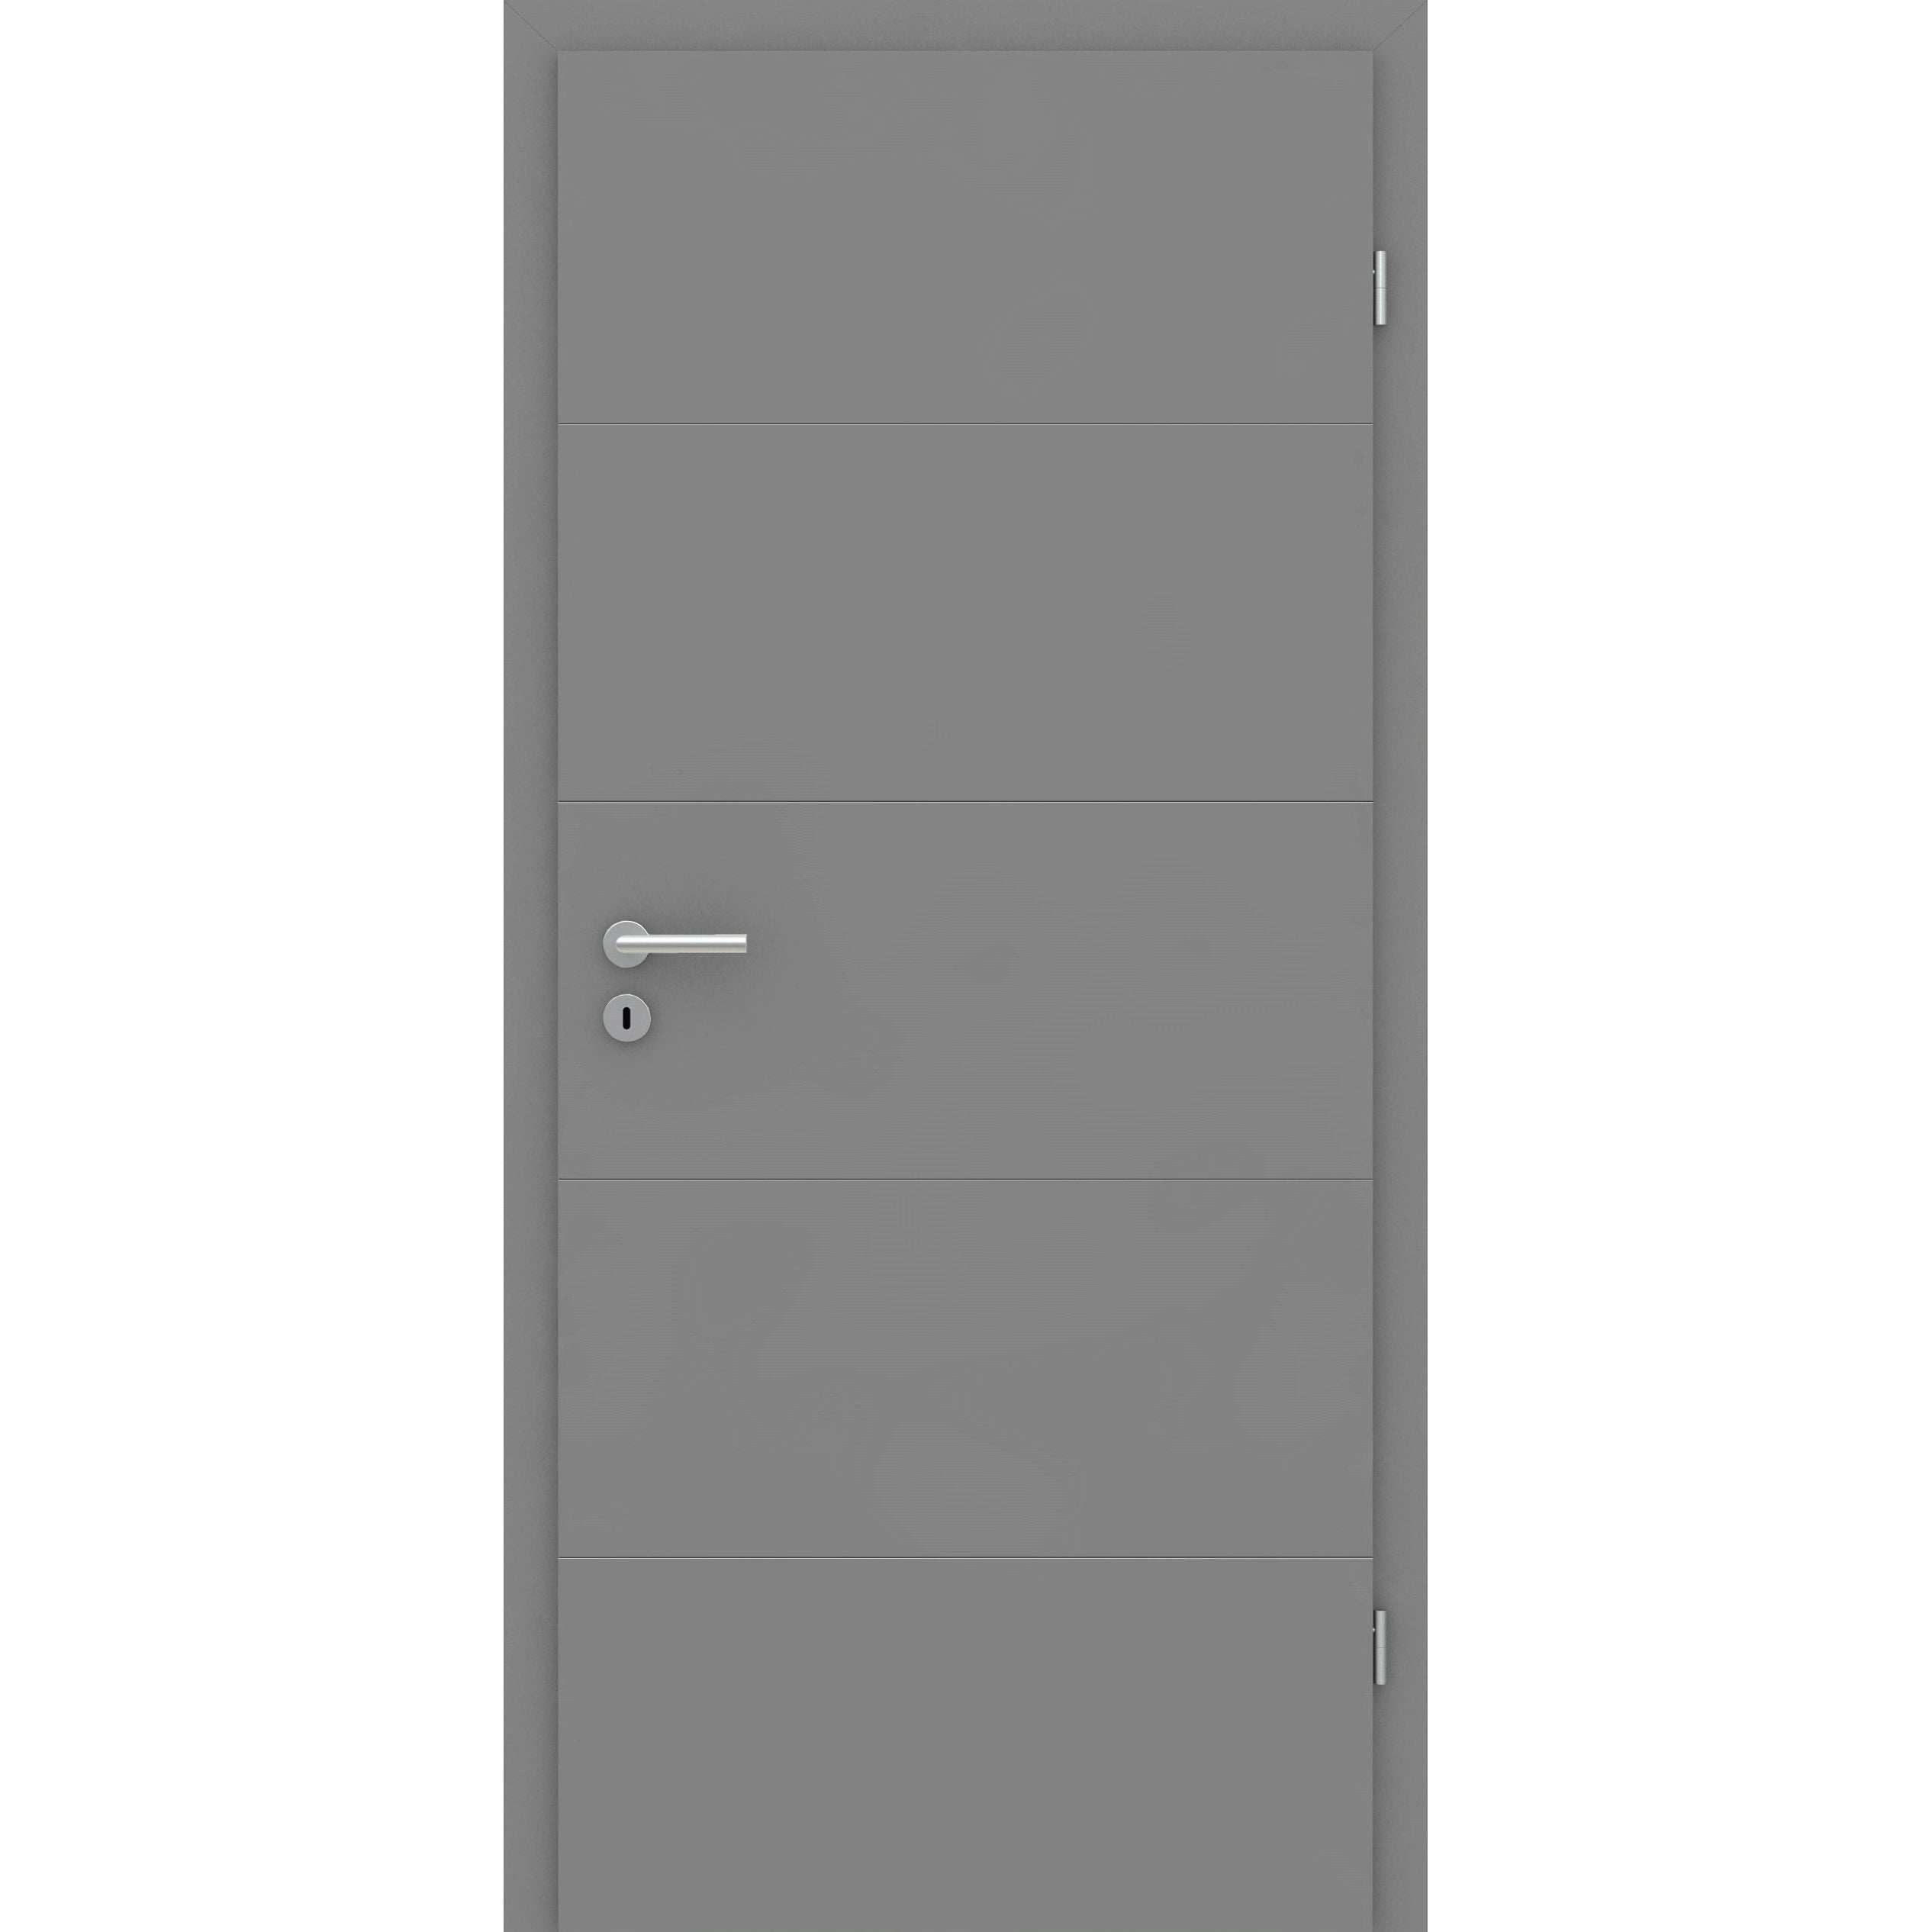 Wohnungseingangstür mit Zarge grau 4 Rillen quer Designkante SK1 / KK3 - Modell Designtür Q47